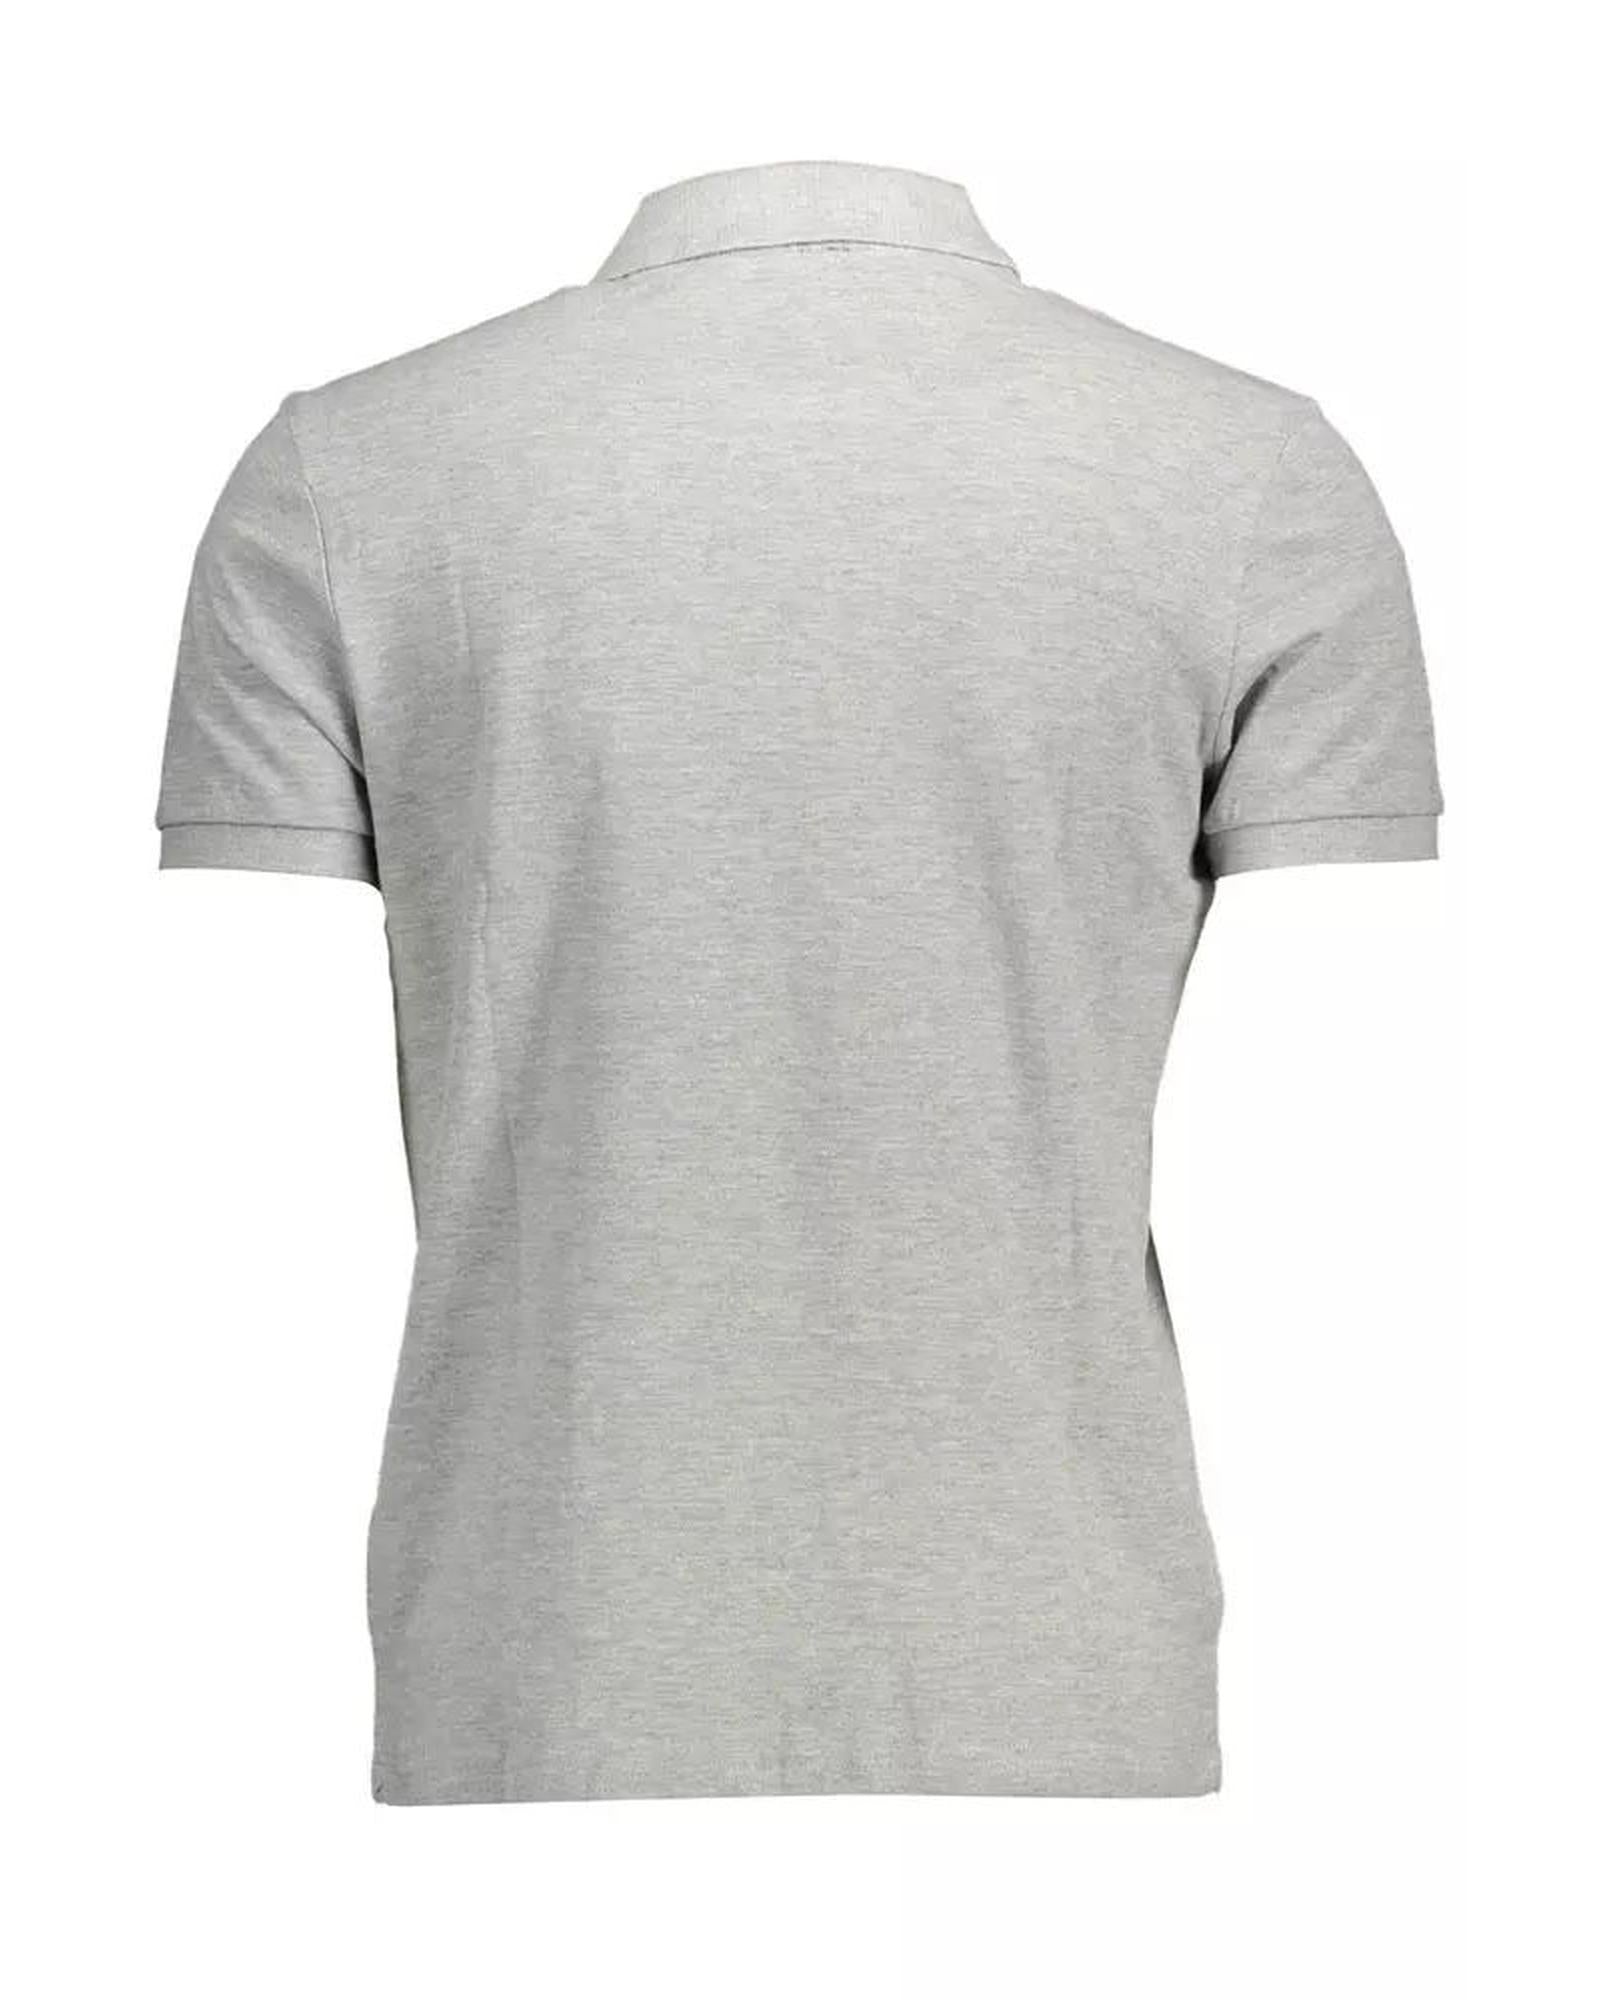 Men's Gray Cotton Polo Shirt - L